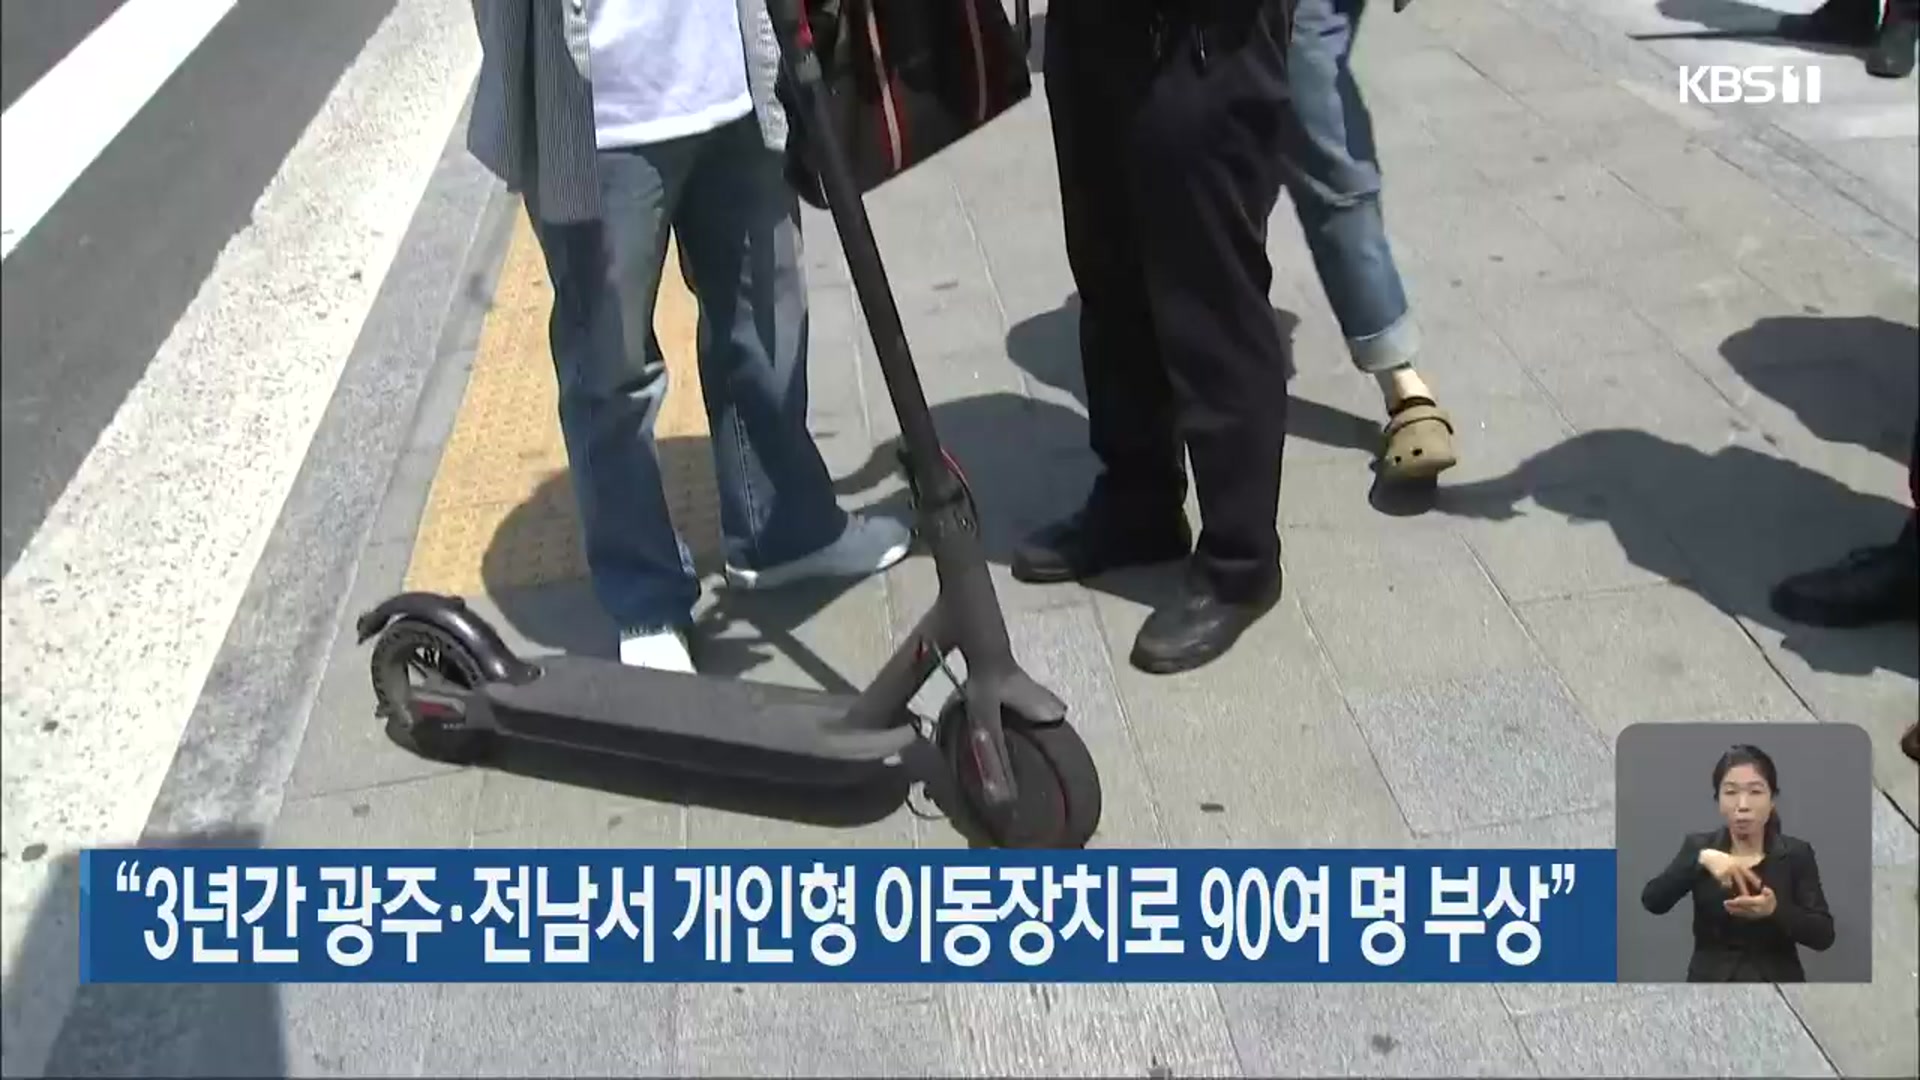 “3년간 광주·전남서 개인형 이동장치로 90여 명 부상”